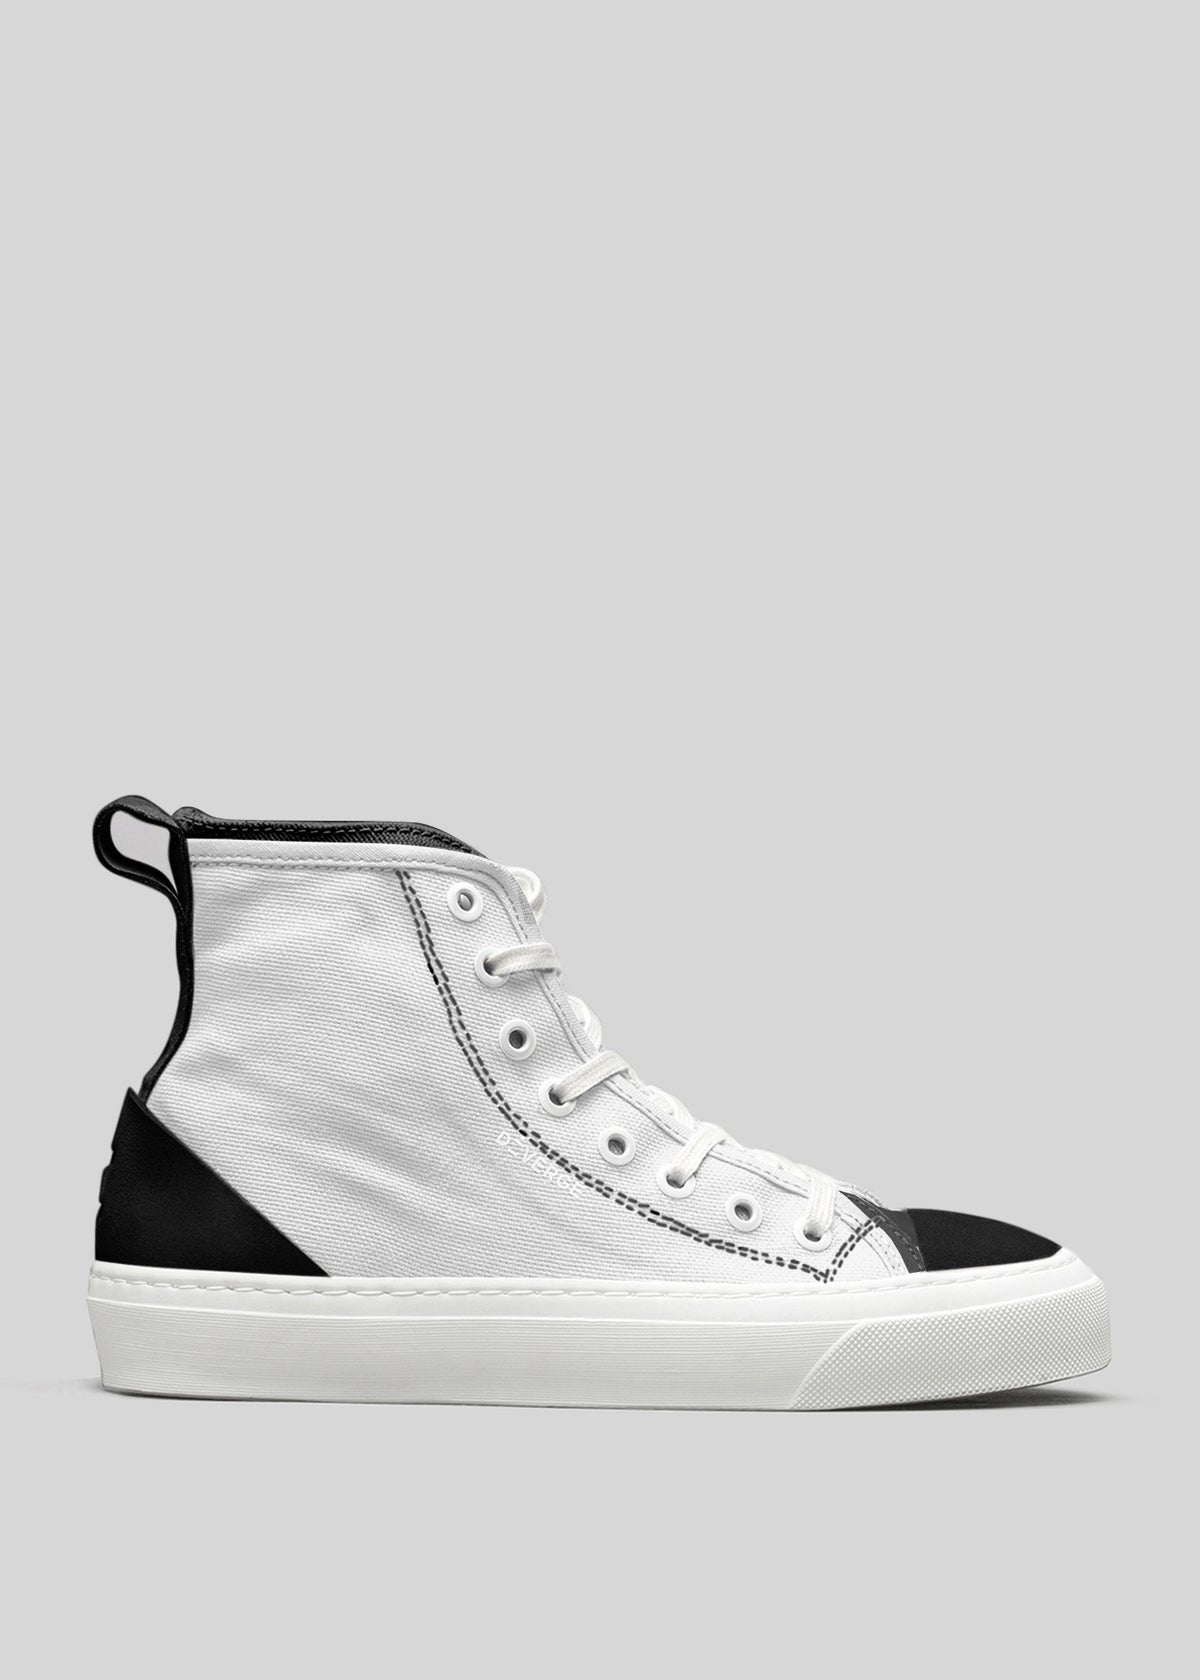 Sneaker alta in tela TH0010 di Letícia con tomaia bianca, tallone e punta neri, su sfondo grigio chiaro.